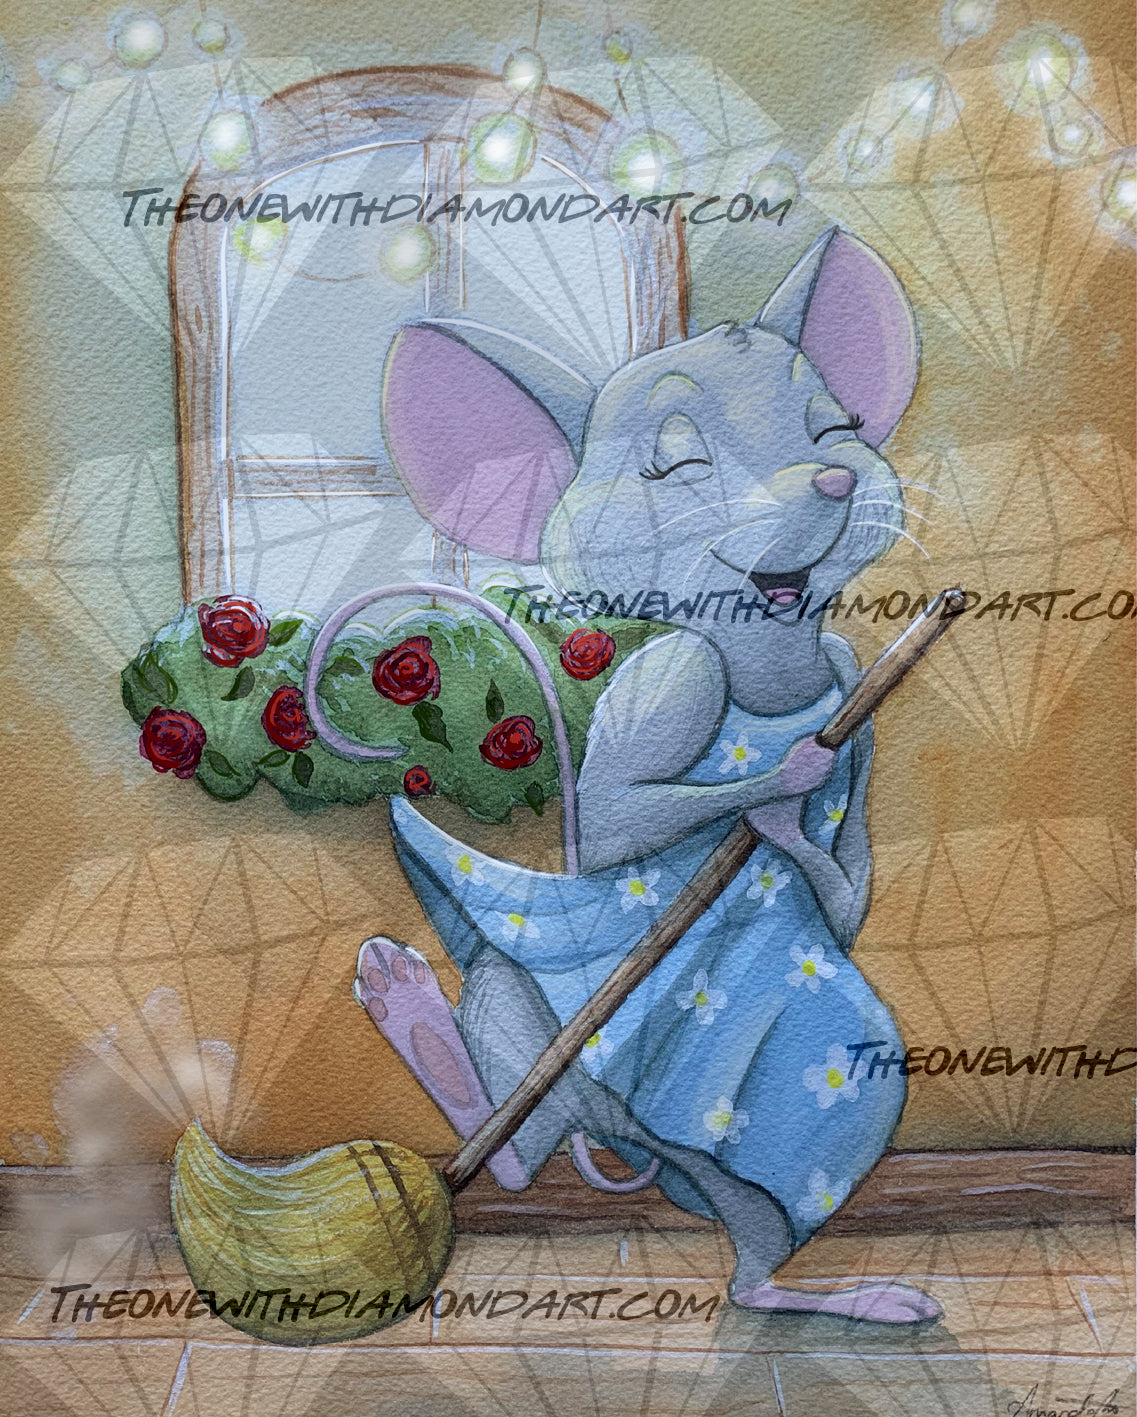 Mouse ©Parente Illustration